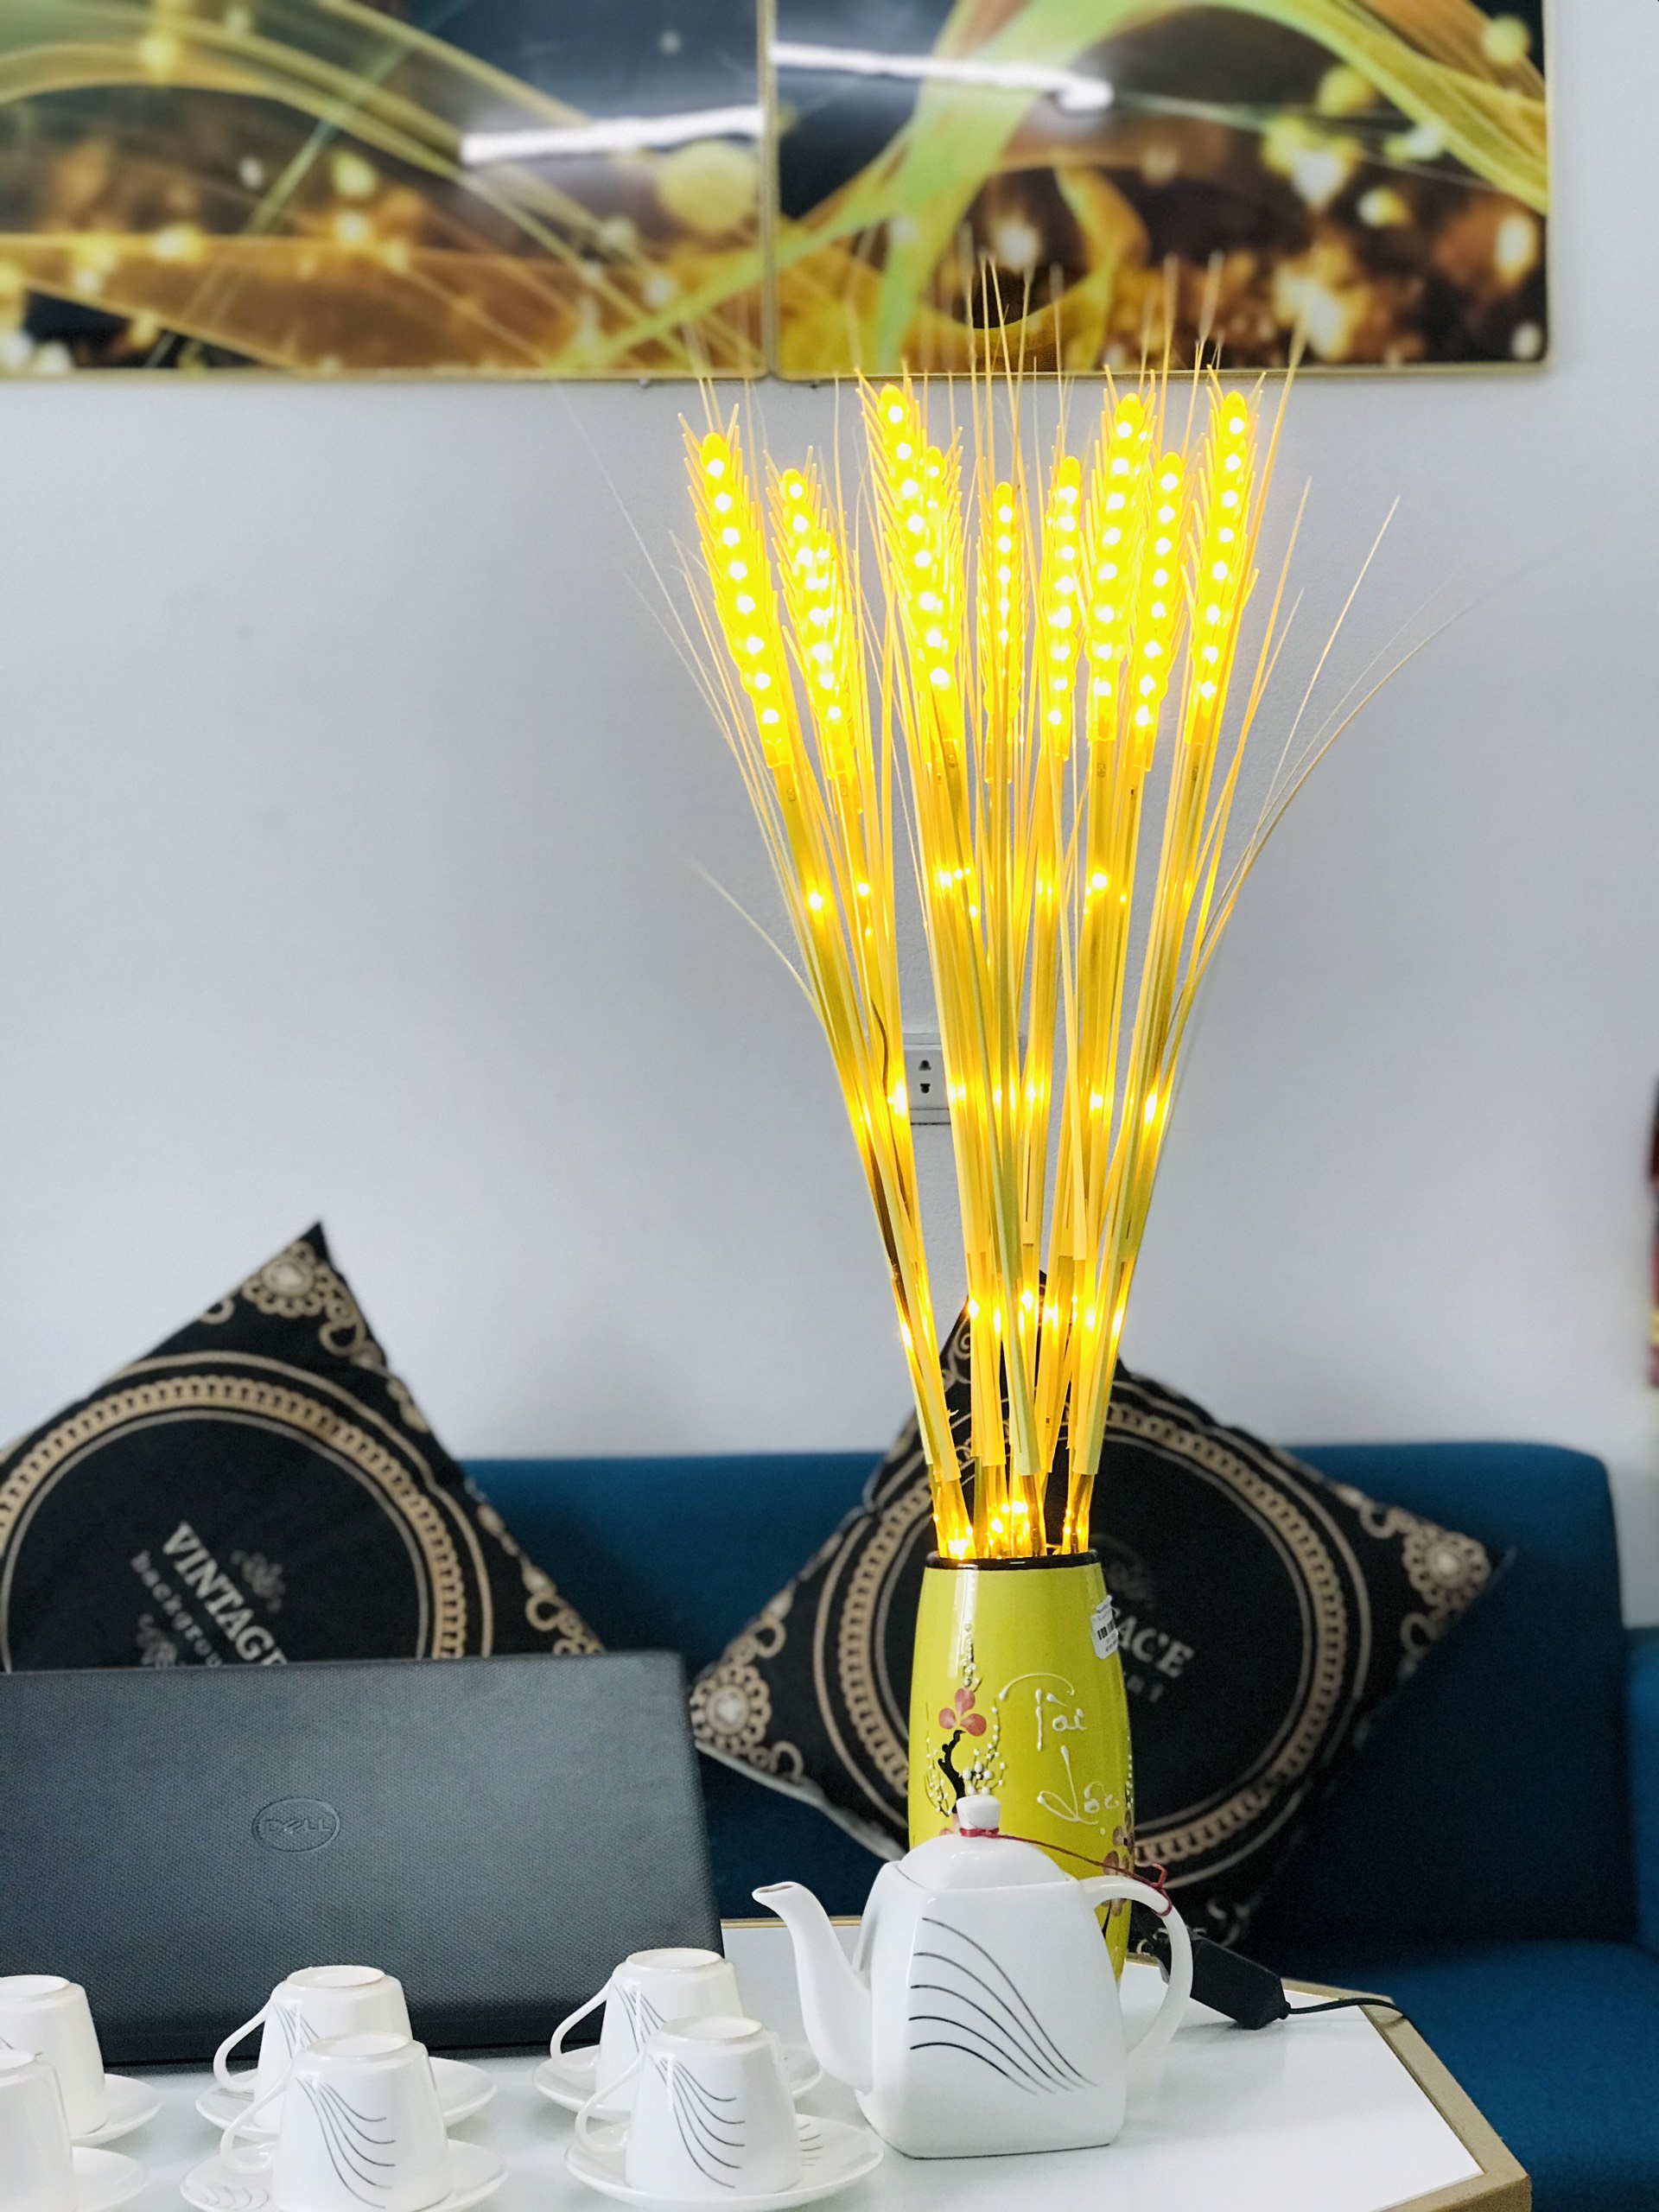 Đèn Bông Lúa Thần Tài: Với thiết kế độc đáo và tinh tế, đèn bông lúa thần tài sẽ mang đến cho ngôi nhà của bạn không gian phong phú và sinh động hơn. Đèn được làm bằng chất liệu đẹp, bền vững và chiếu sáng êm ái, giúp tạo ra không gian ấm cúng và thoải mái cho gia đình.